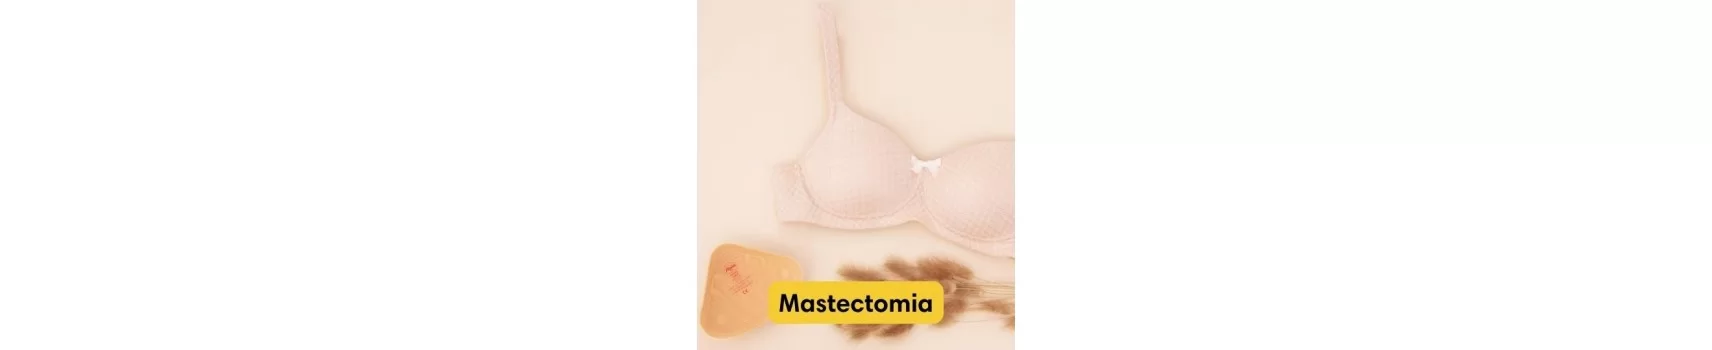 Mastectomia | Viver Melhor® | Comprar aqui